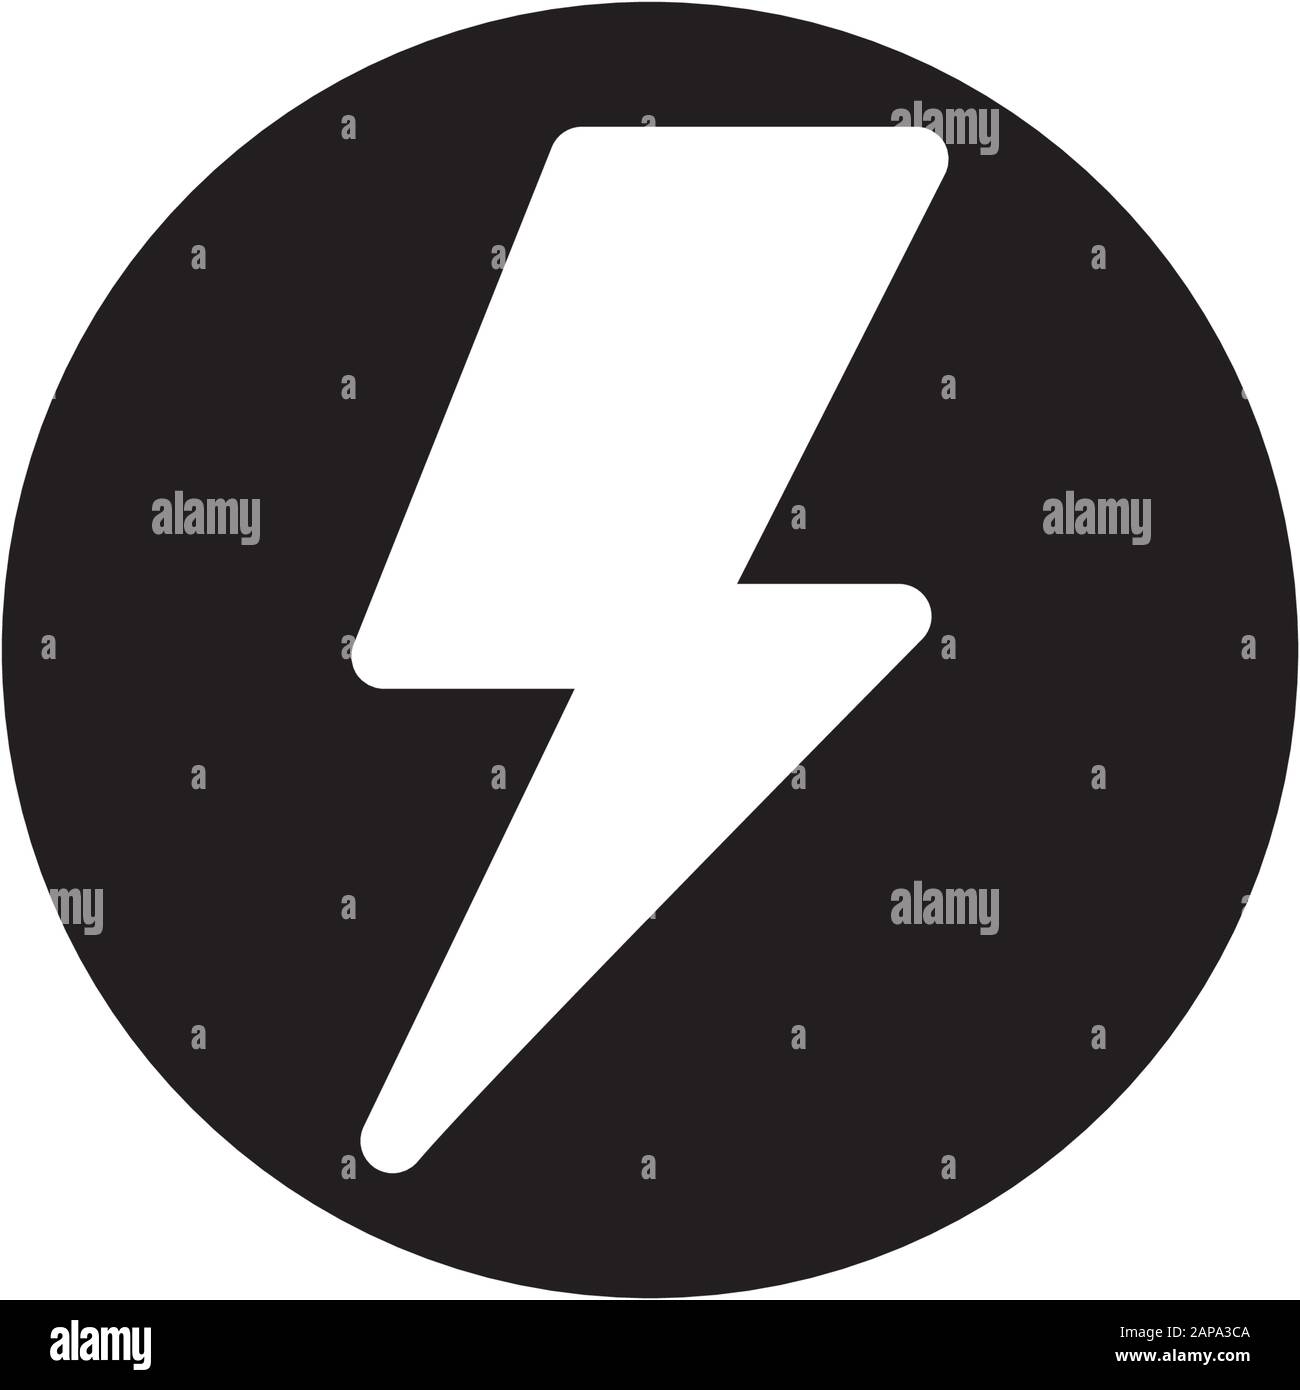 Lightning bolt flash thunderbolt icons vectors Stock Vector